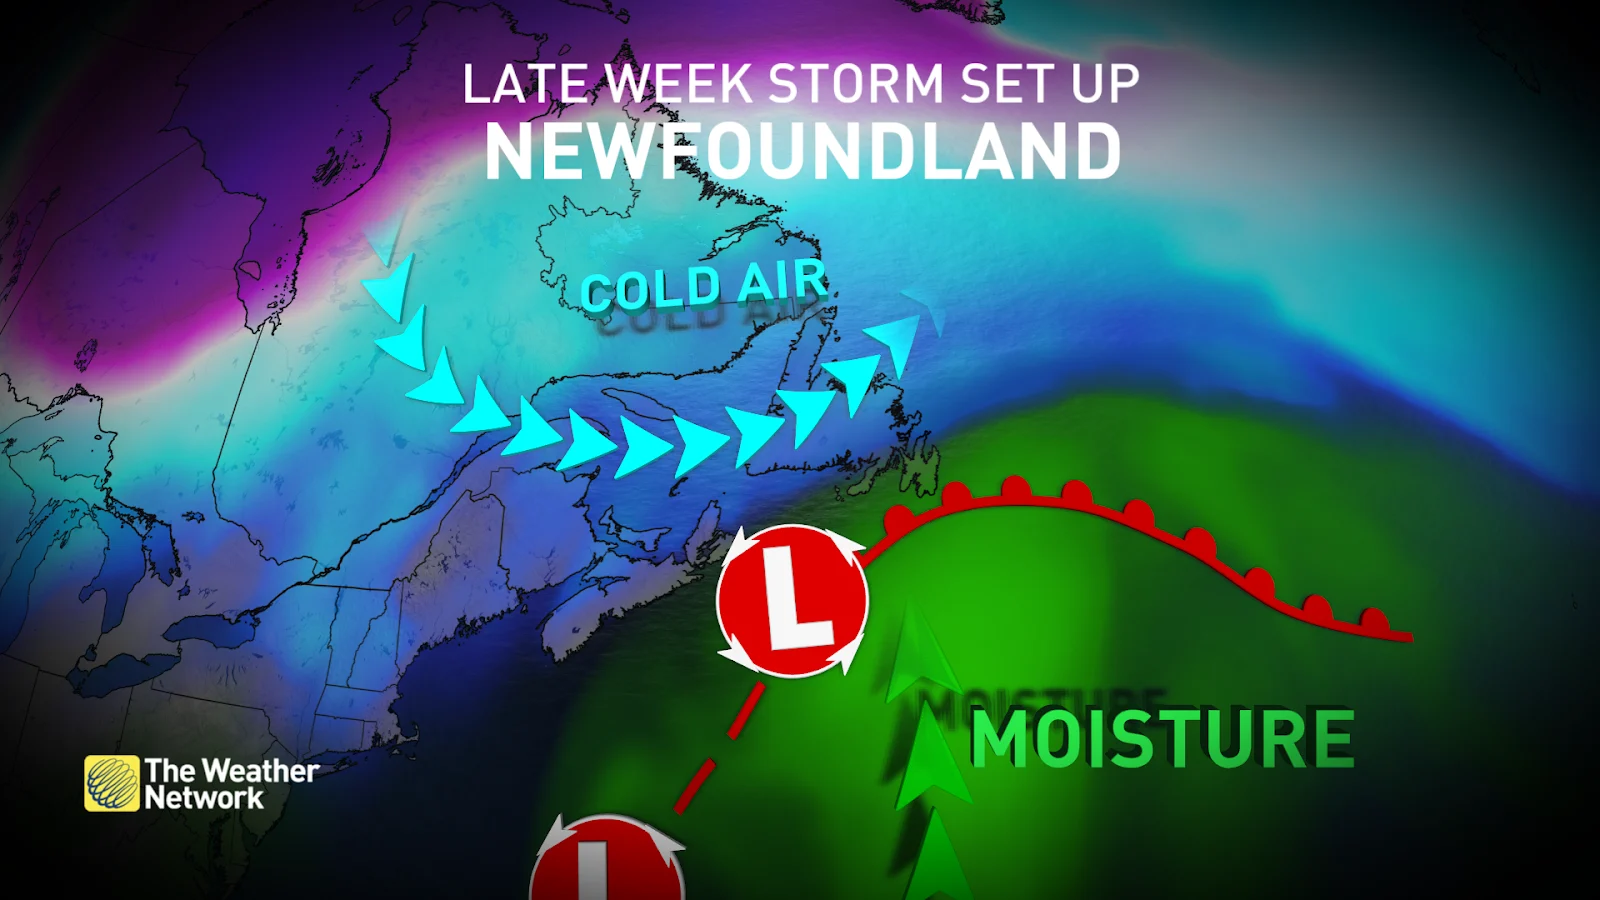 Newfoundland storm setup